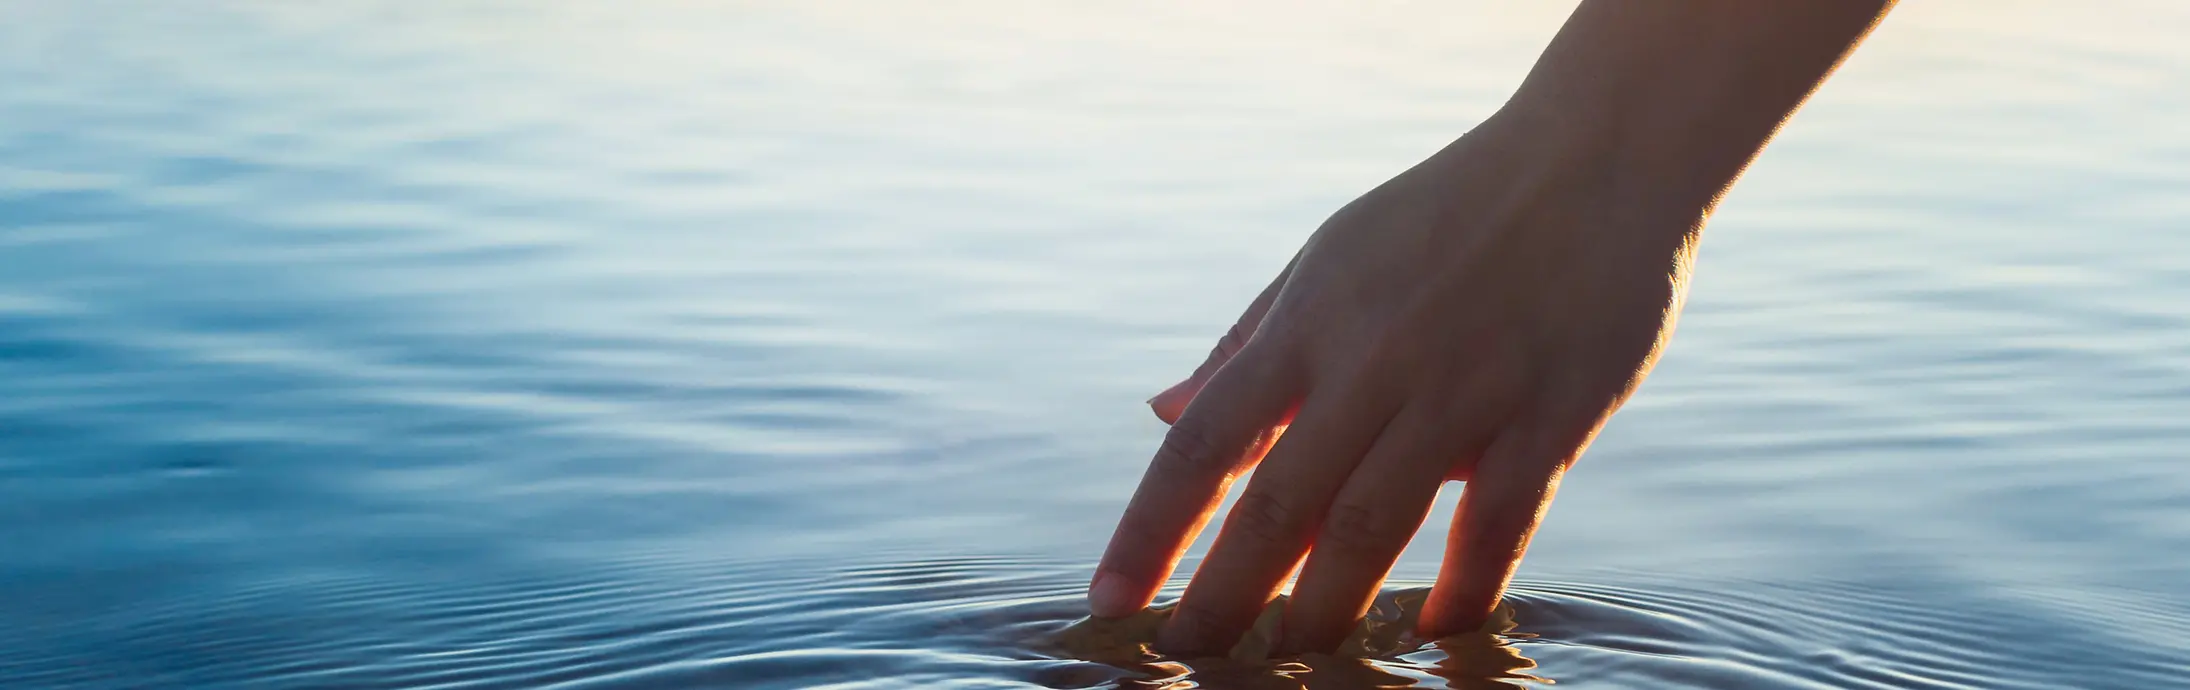 Uma mão acaricia uma superfície de água calma diante do horizonte